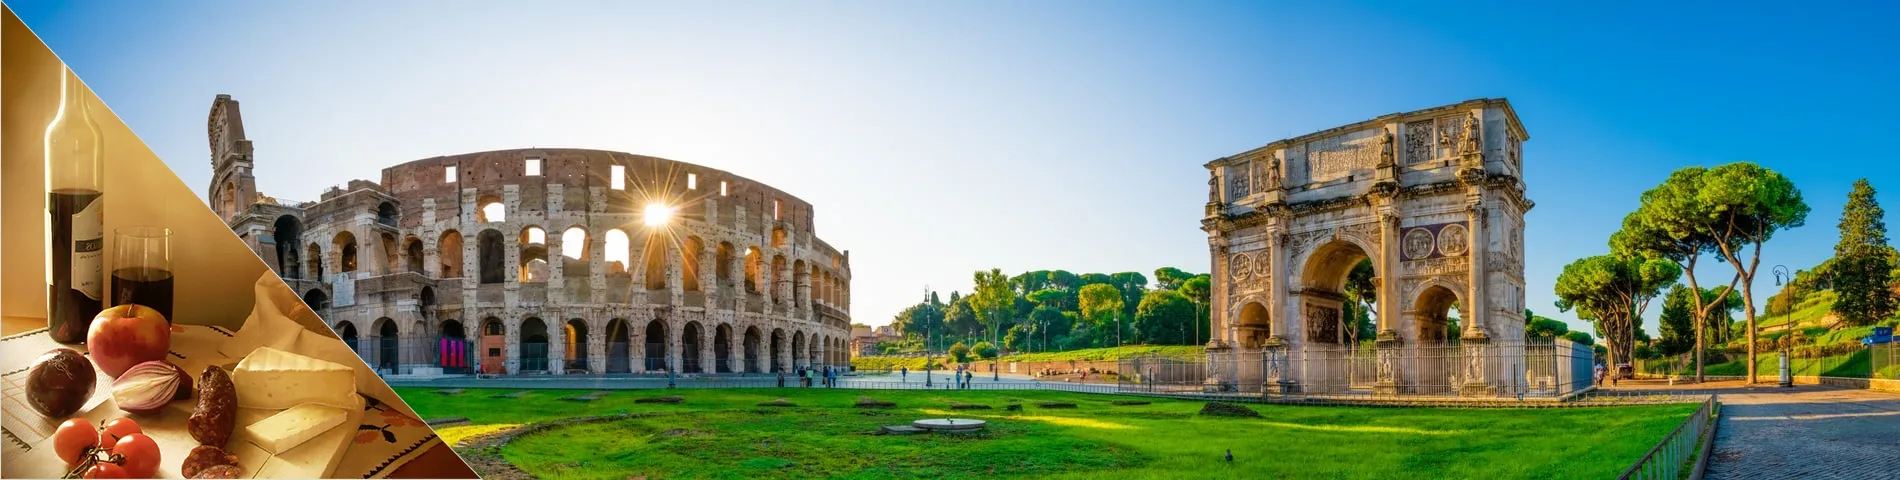 Рим - італійська та пізнання культури